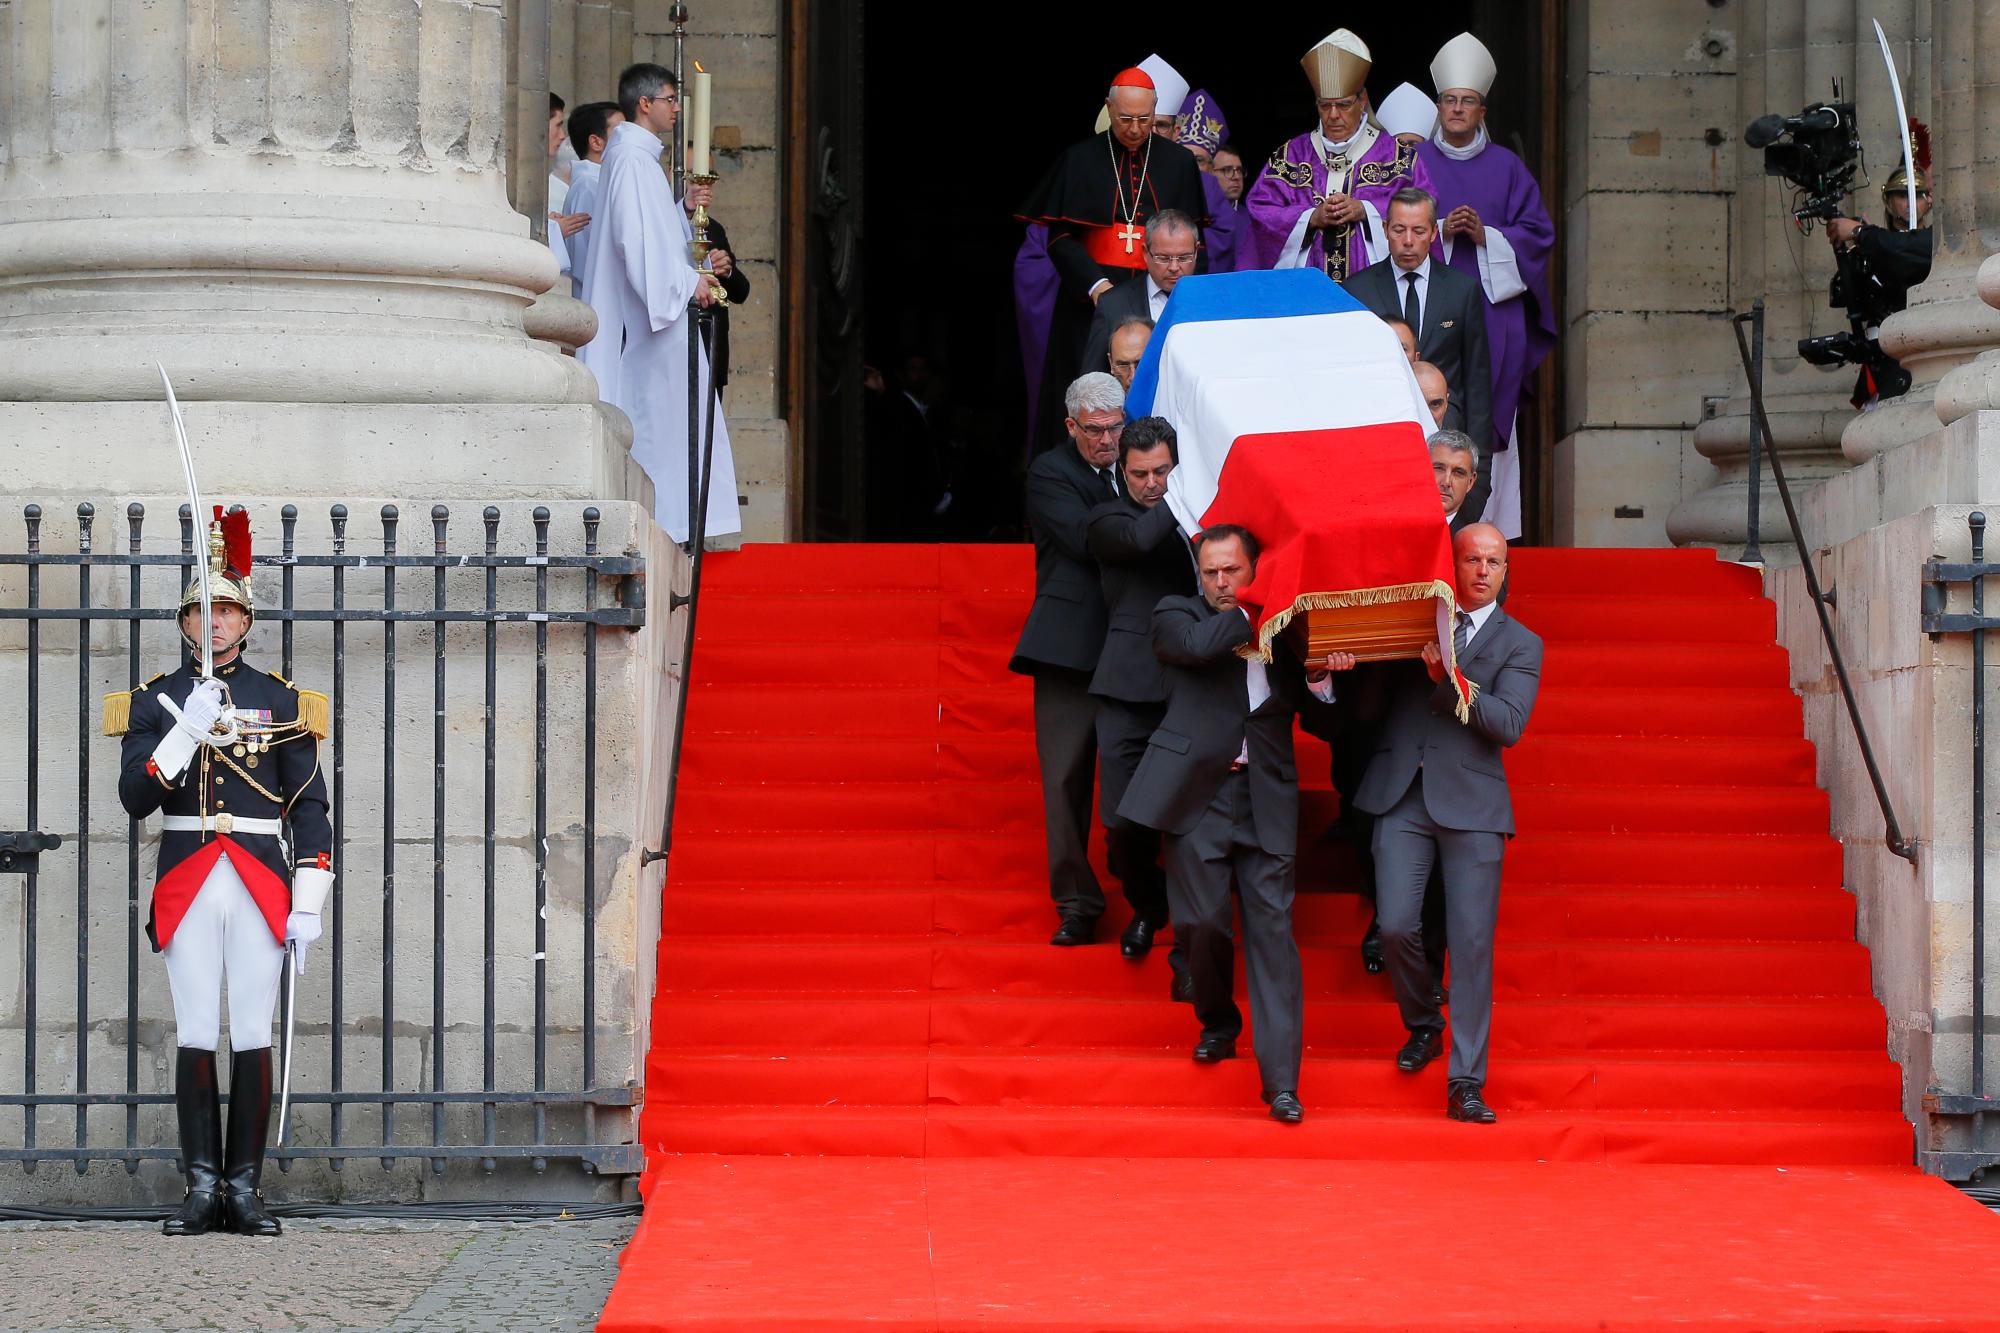 El ataúd del ex presidente francés Jacques Chirac se lleva a cabo en la Iglesia de Saint Sulpice en París, el lunes 30 de septiembre de 2019, donde los jefes de estado anteriores y actuales se reunieron para rendir homenaje a Chirac, quien murió la semana pasada a la edad de 86 años.